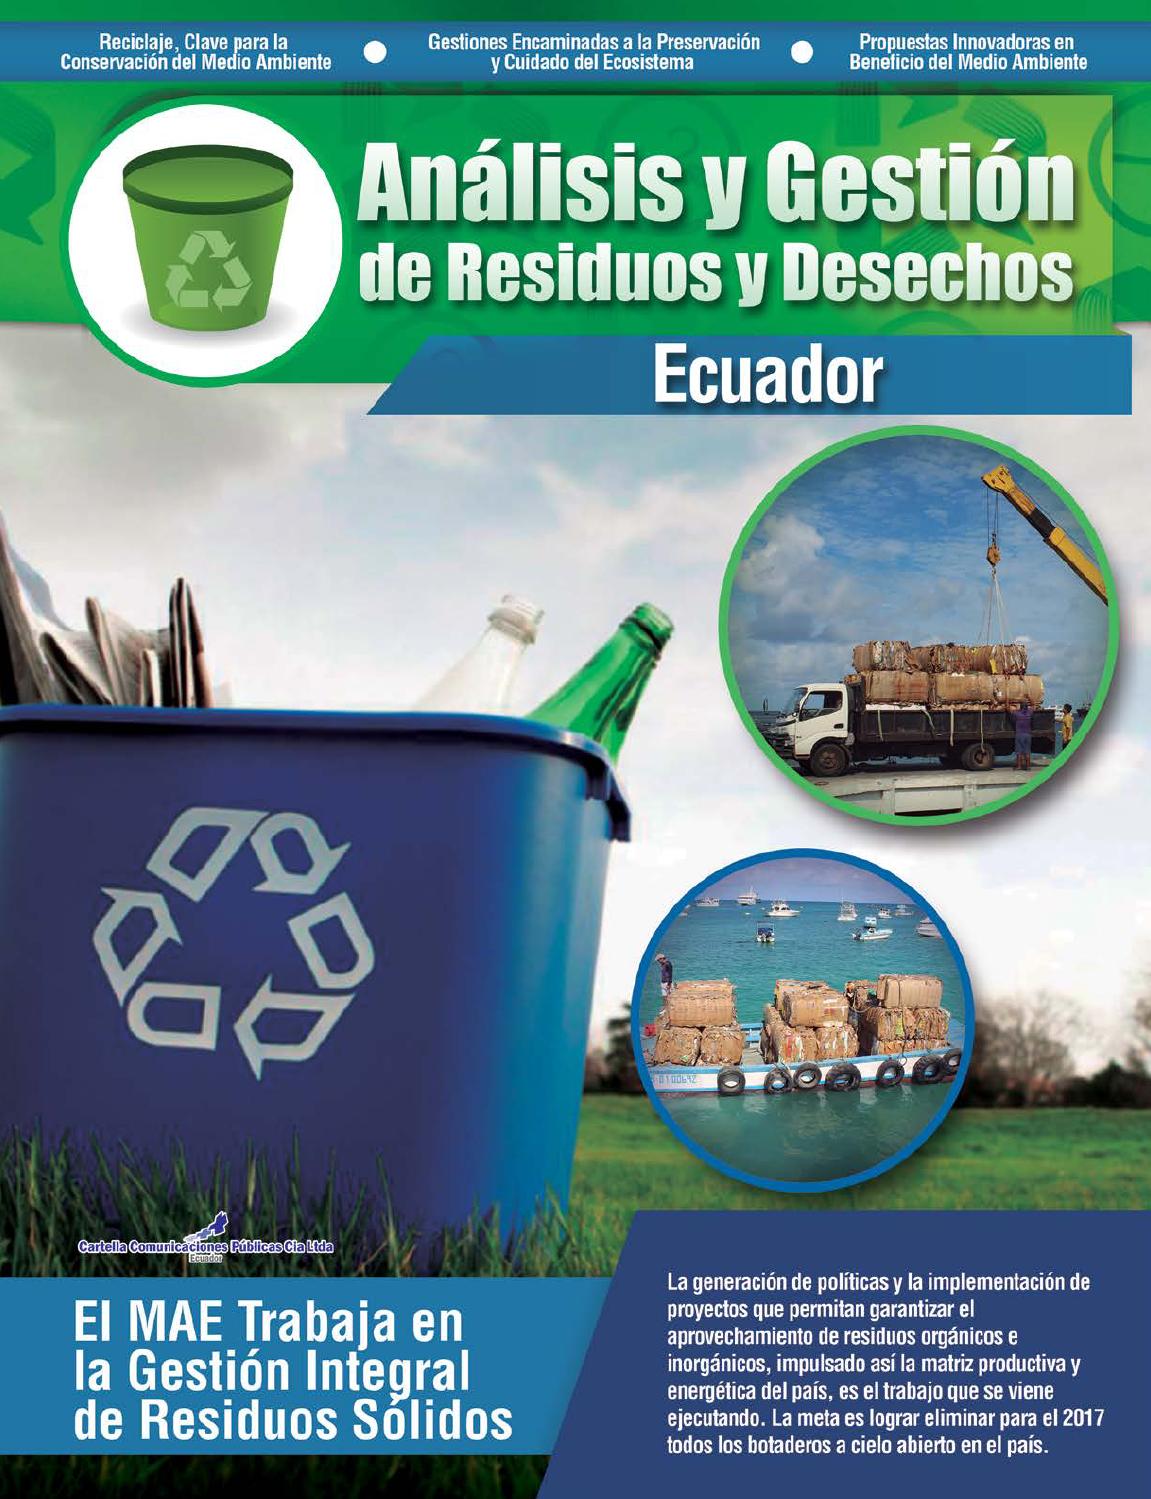 Anãlisis y gestiãn de residuos y desechos ecuador by cartella unicaciones publicas